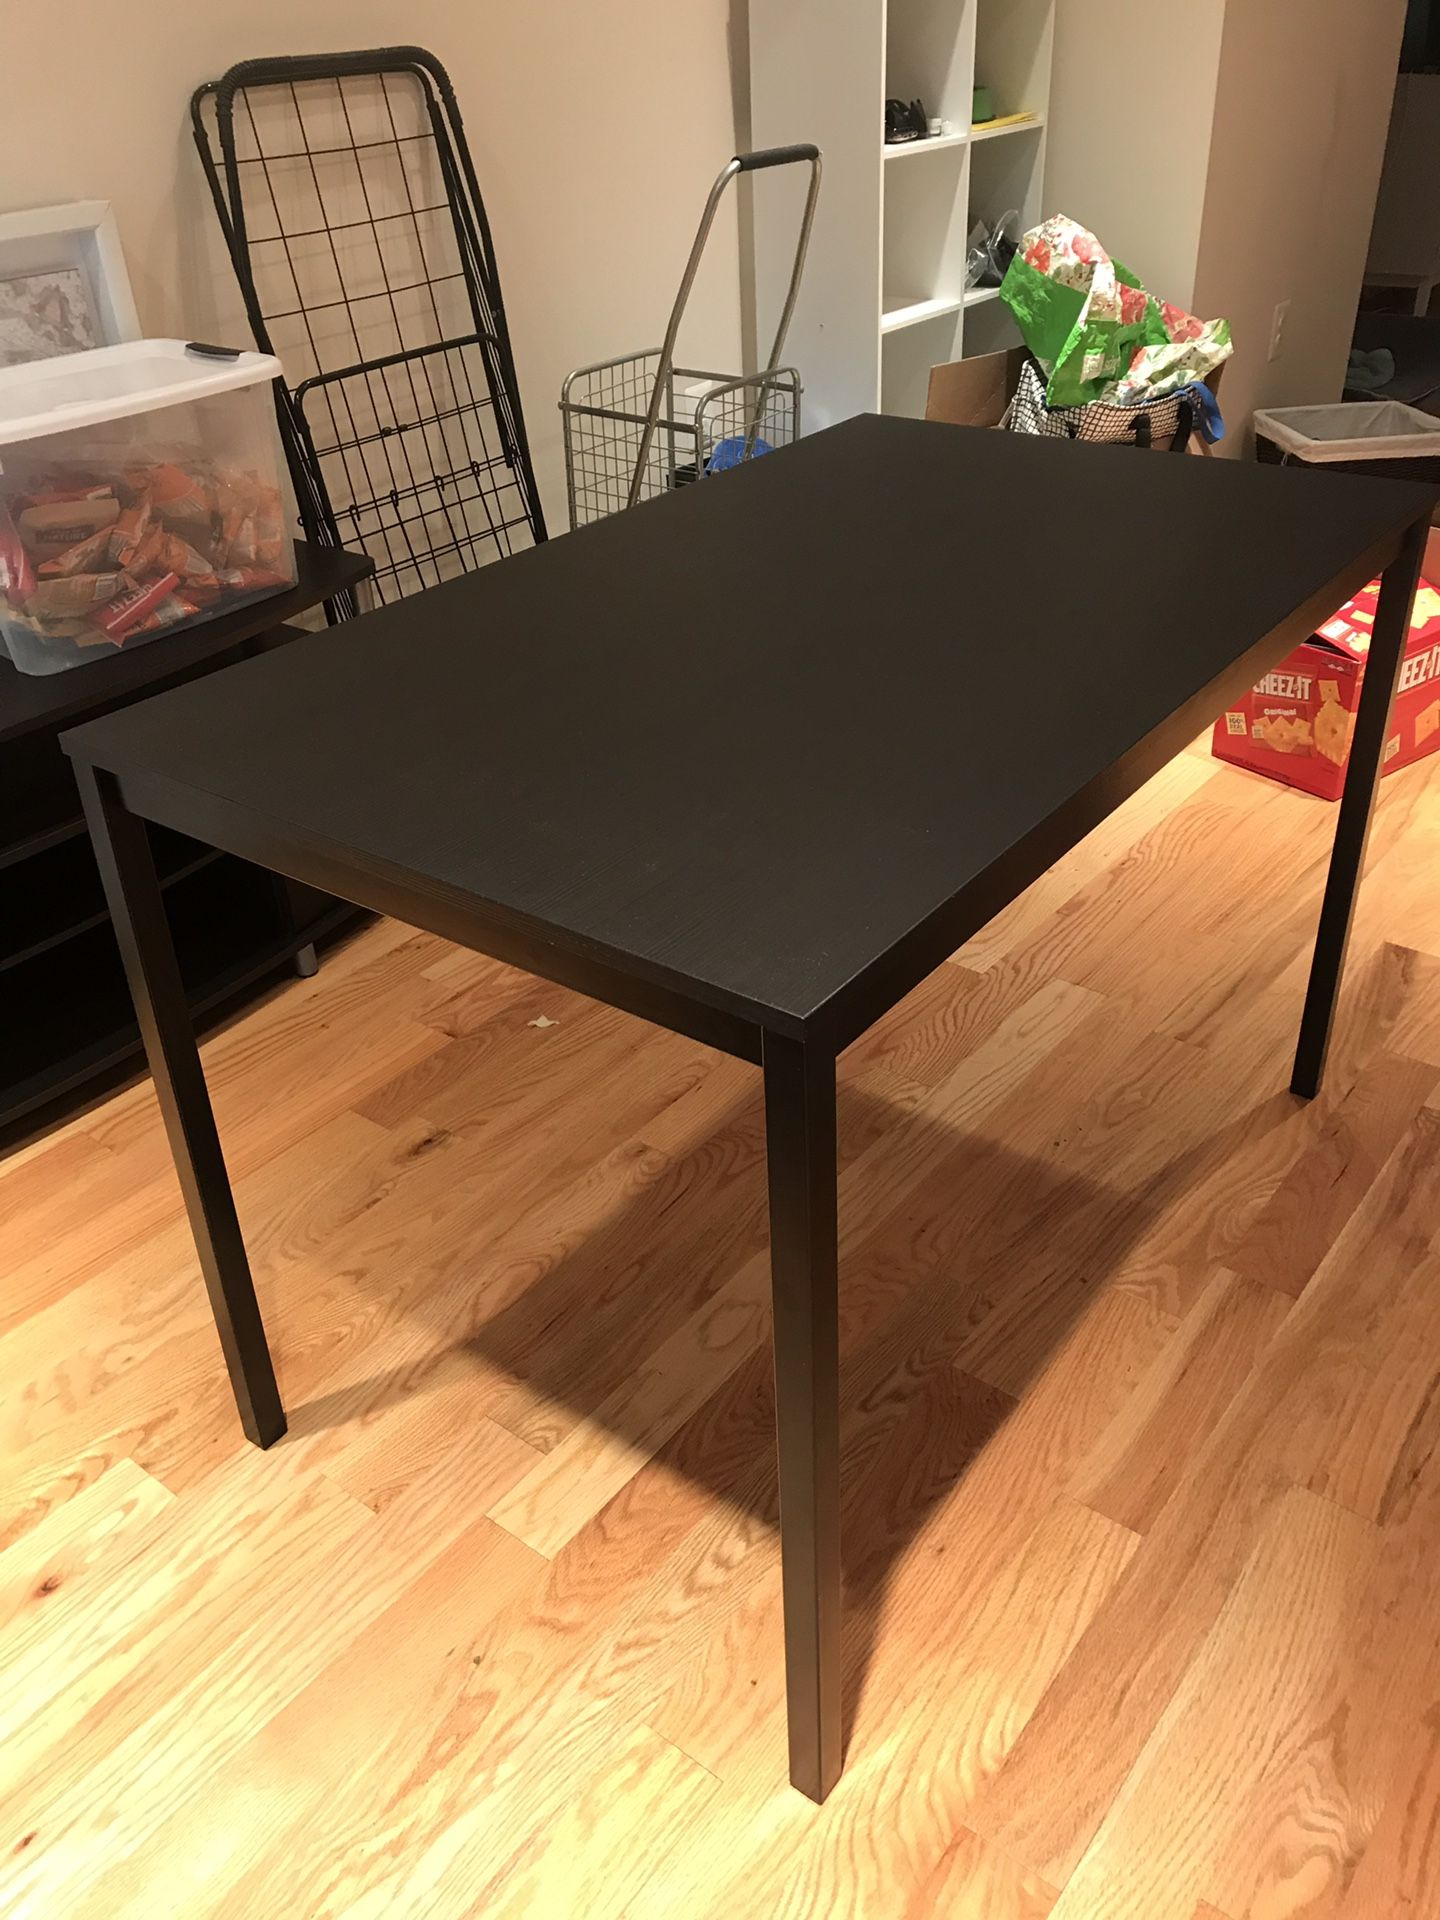 IKEA kitchen table